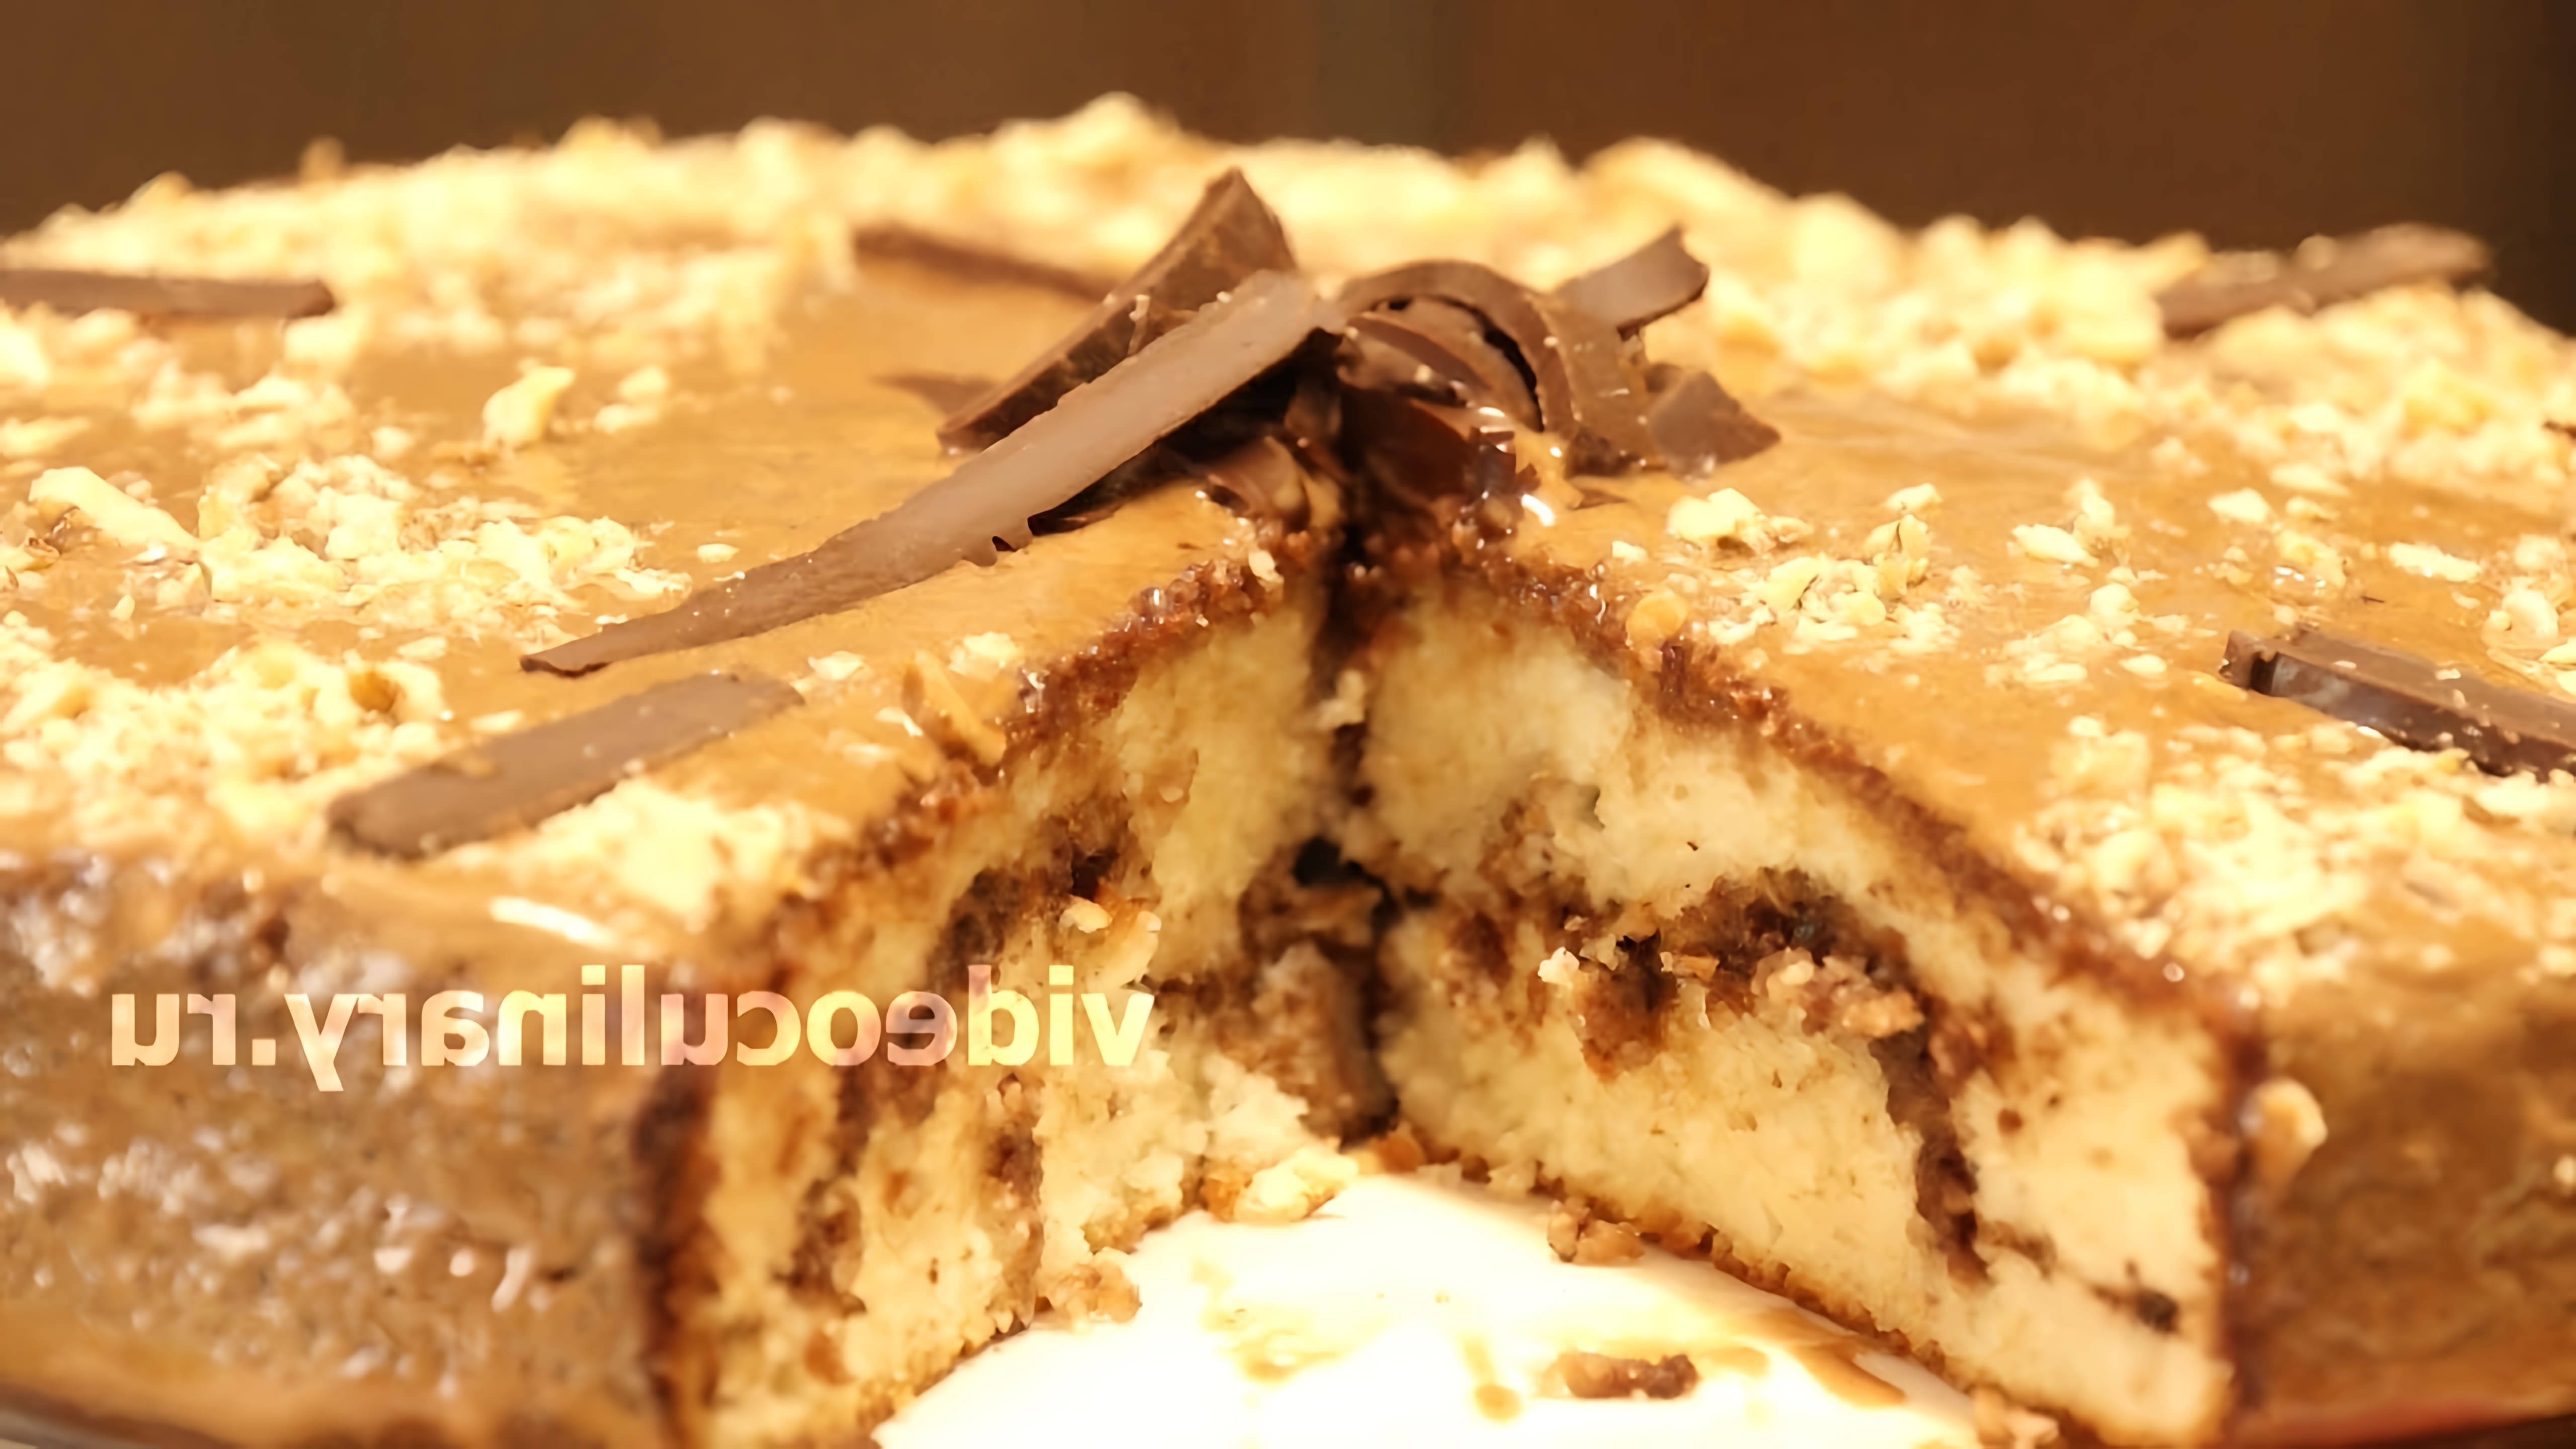 В этом видео демонстрируется рецепт шоколадно-орехового торта от Бабушки Эммы